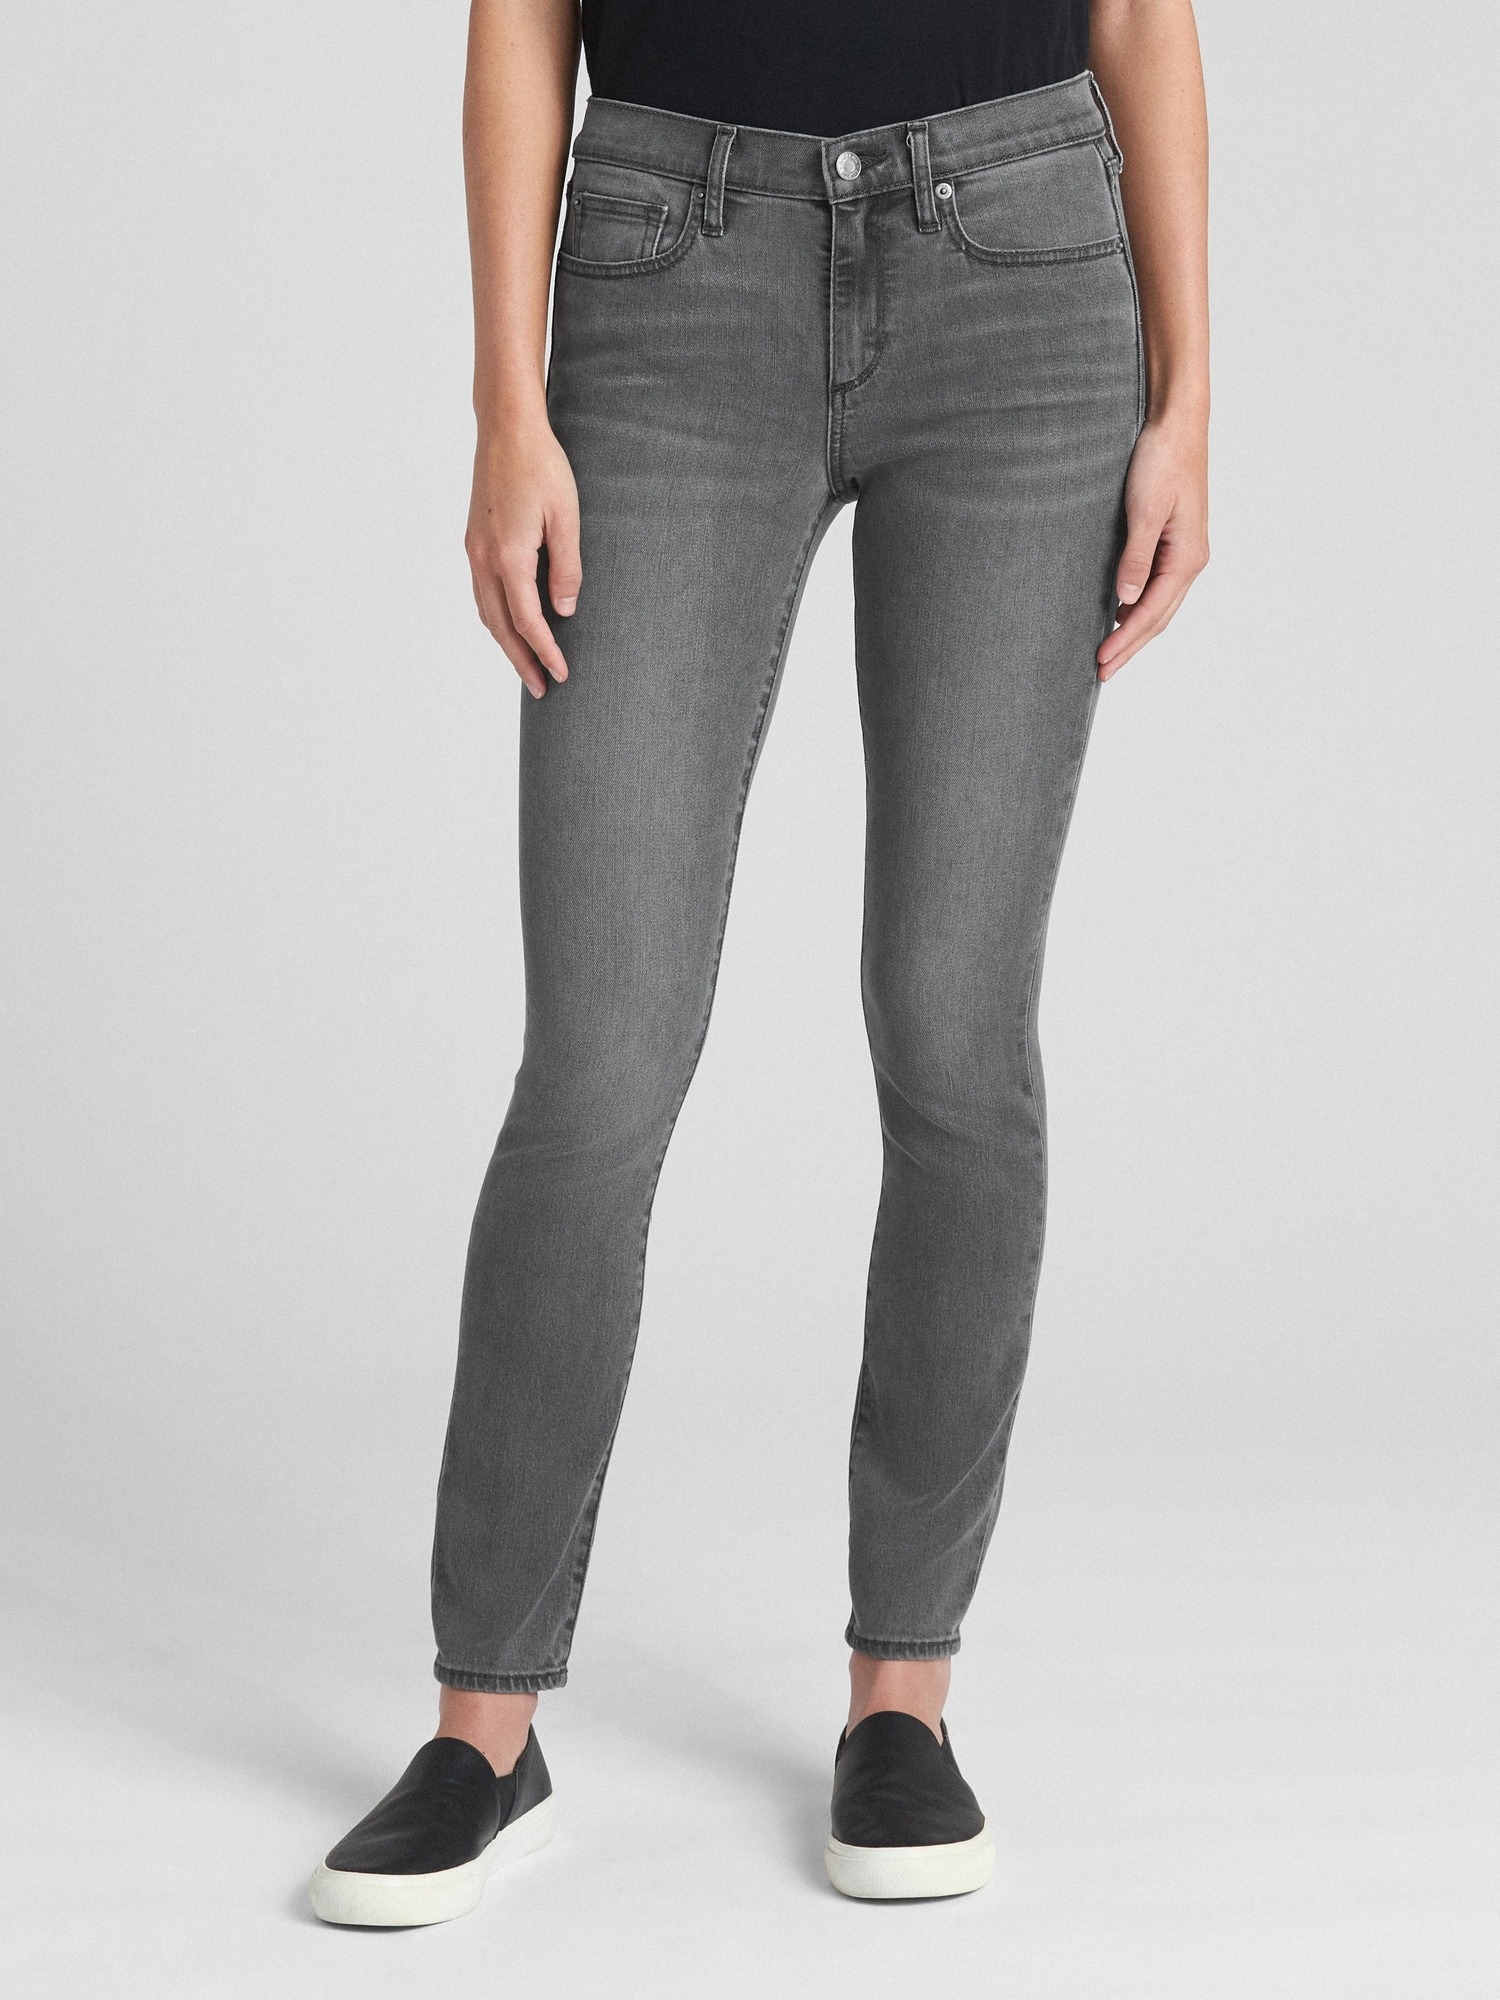 Gap Soft Wear Orta Belli True Skinny Jean Pantolon. 1